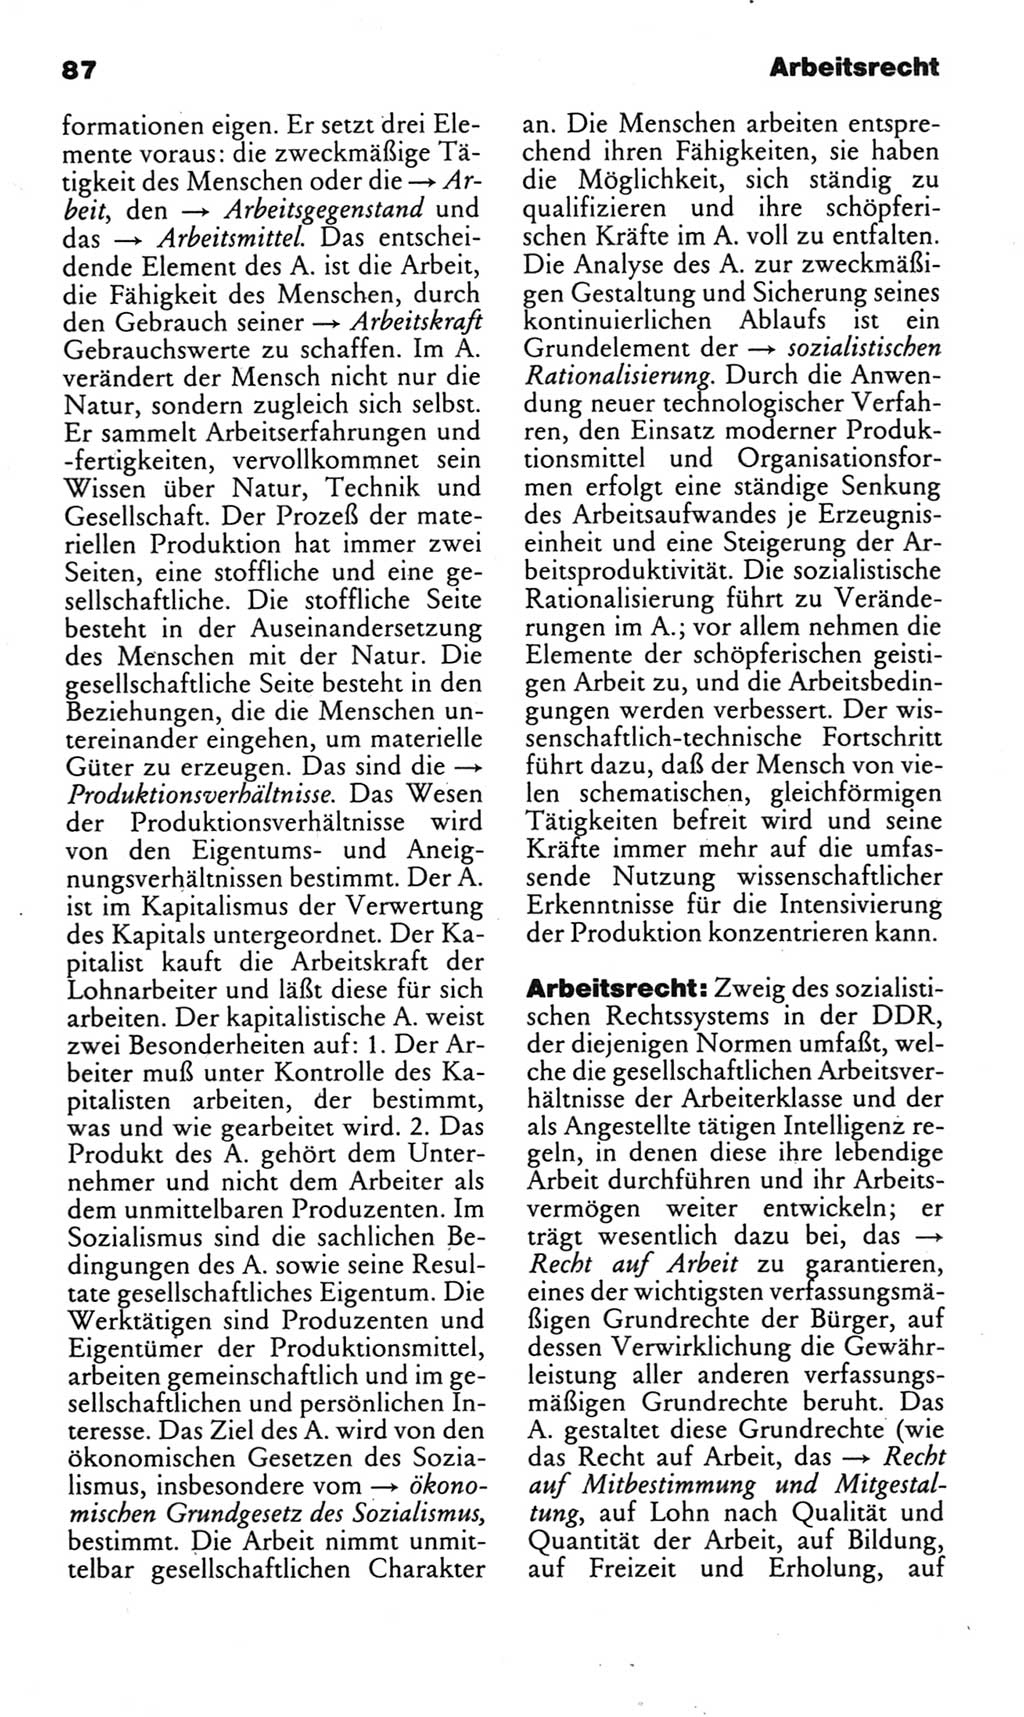 Kleines politisches Wörterbuch [Deutsche Demokratische Republik (DDR)] 1983, Seite 87 (Kl. pol. Wb. DDR 1983, S. 87)